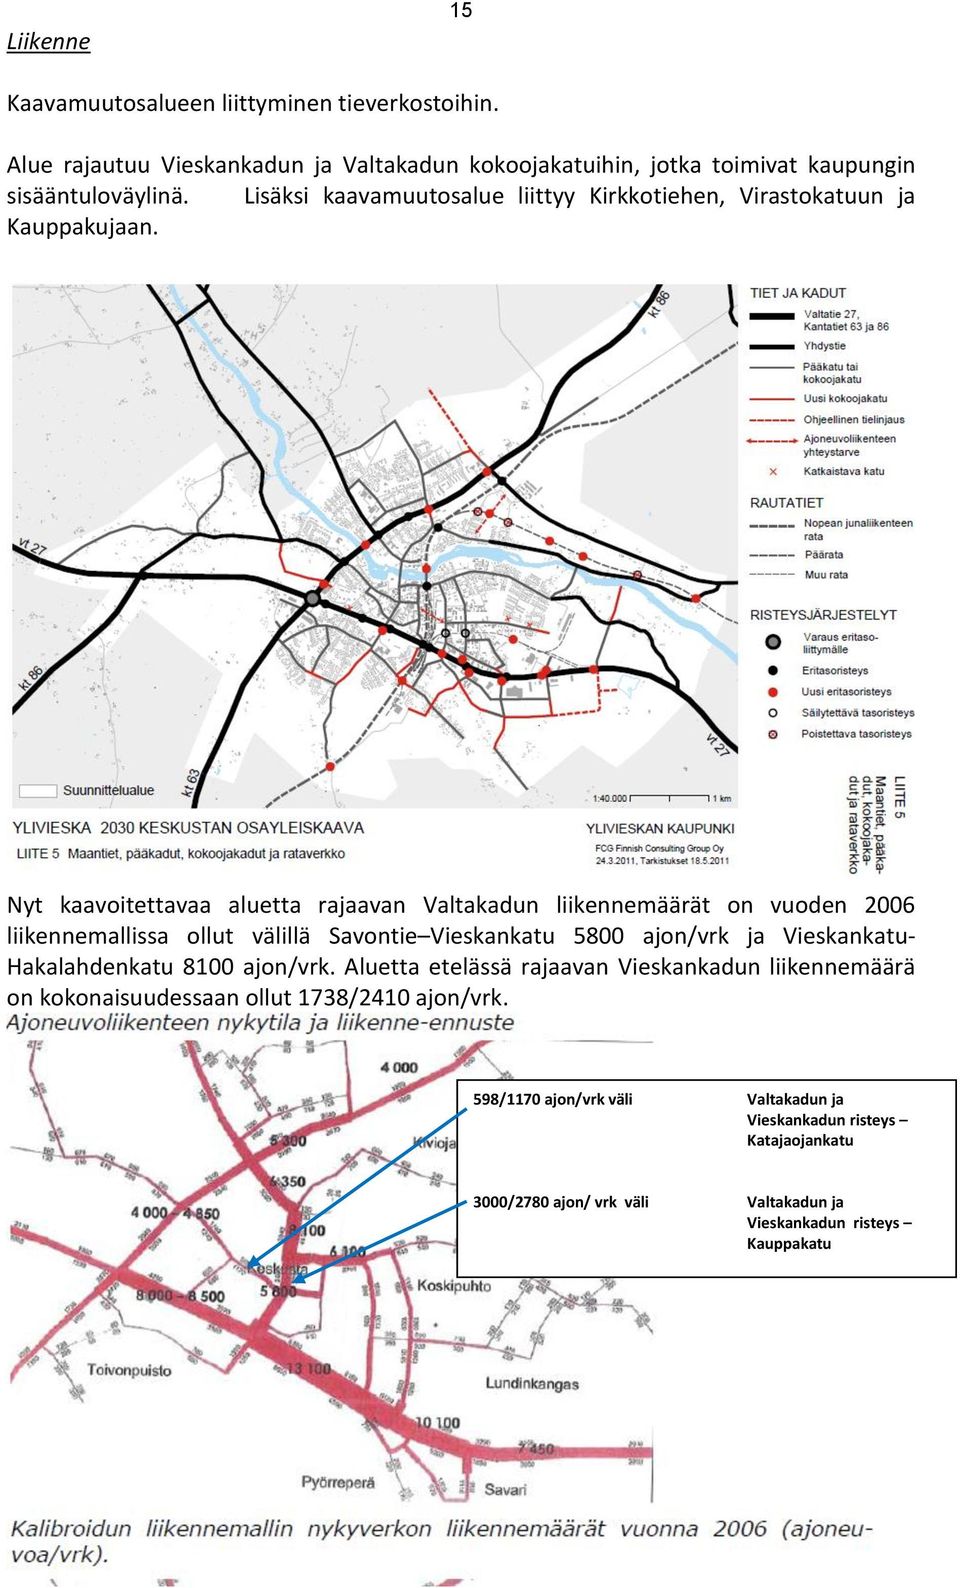 Nyt kaavoitettavaa aluetta rajaavan Valtakadun liikennemäärät on vuoden 2006 liikennemallissa ollut välillä Savontie Vieskankatu 5800 ajon/vrk ja Vieskankatu-